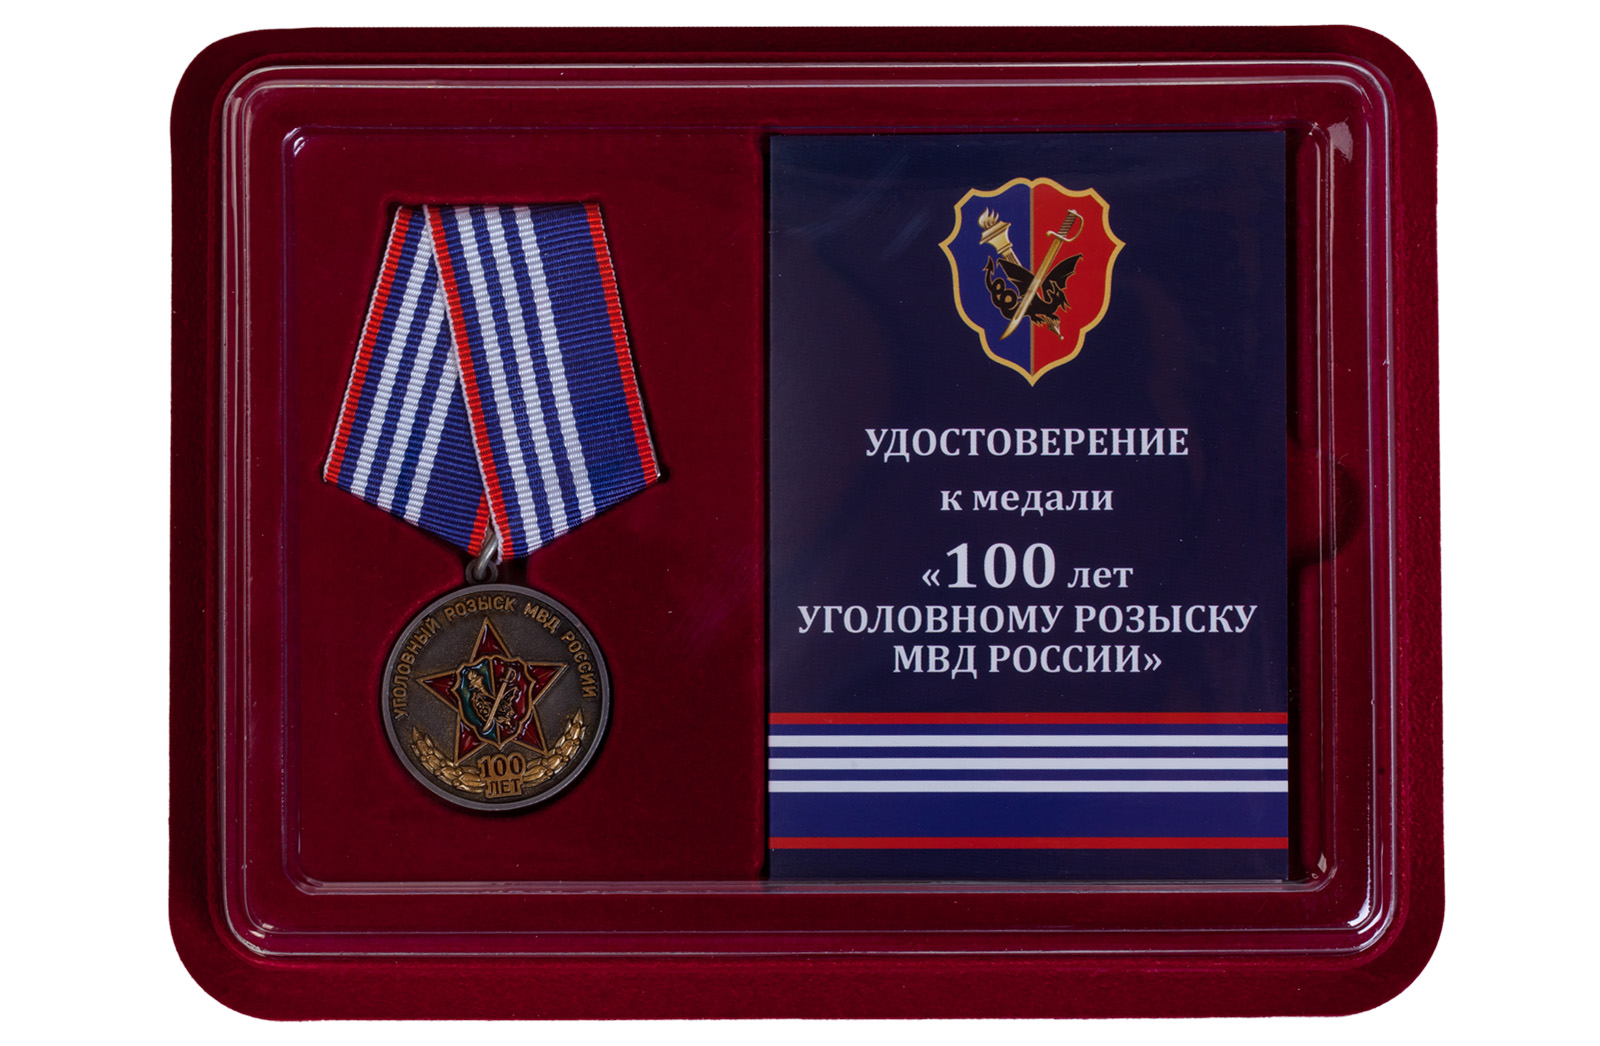 Купить медаль МВД России 100 лет Уголовному розыску по лучшей цене